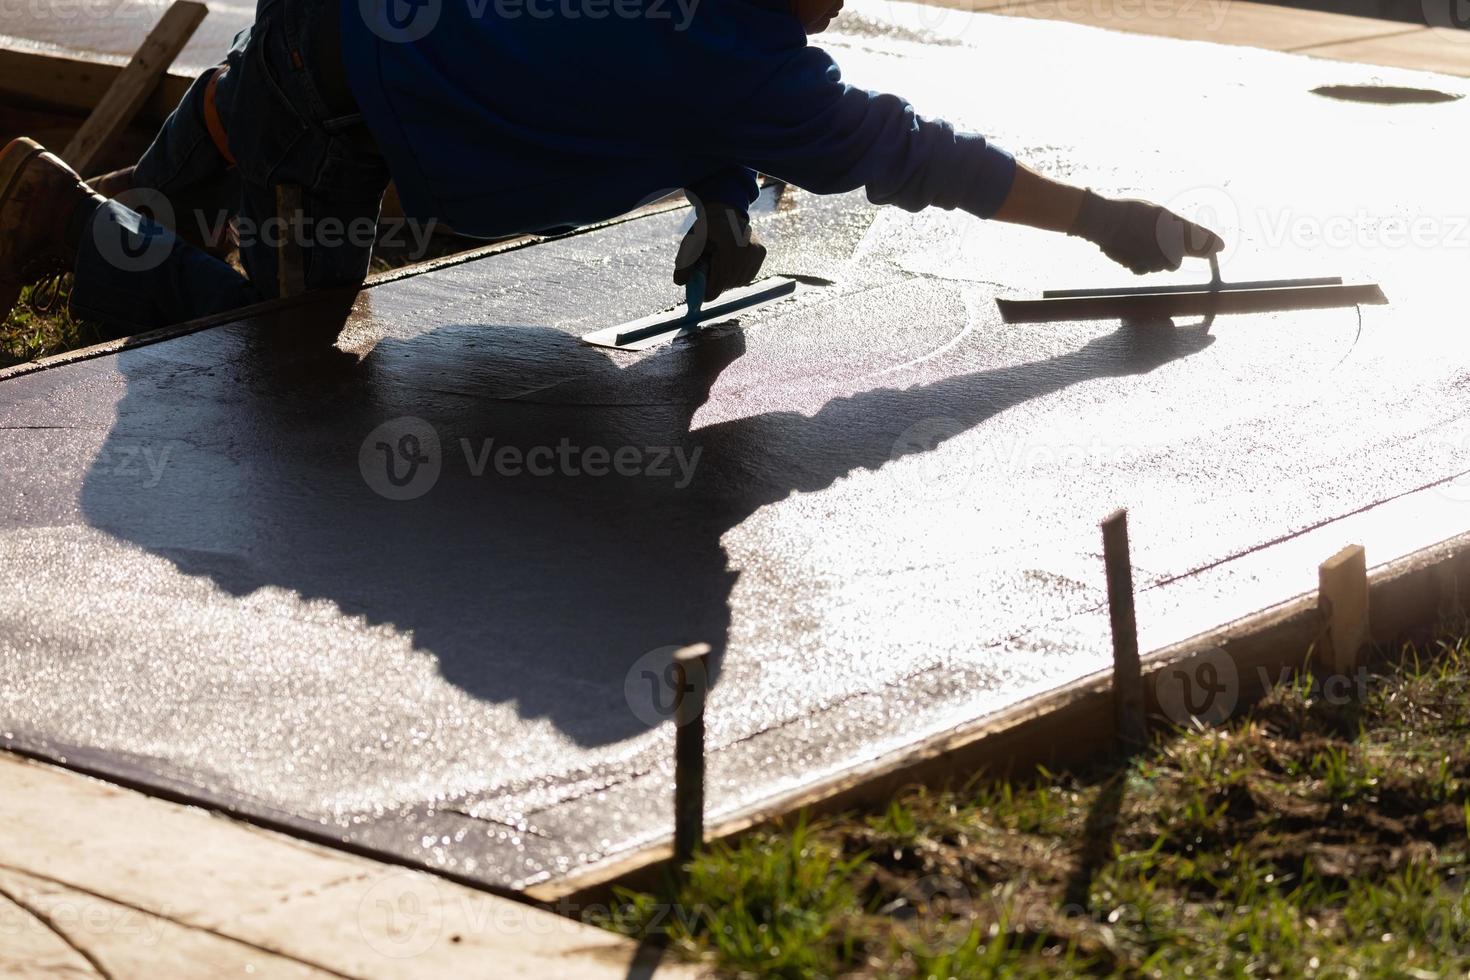 travailleur de la construction lissant le ciment humide avec des outils de truelle photo